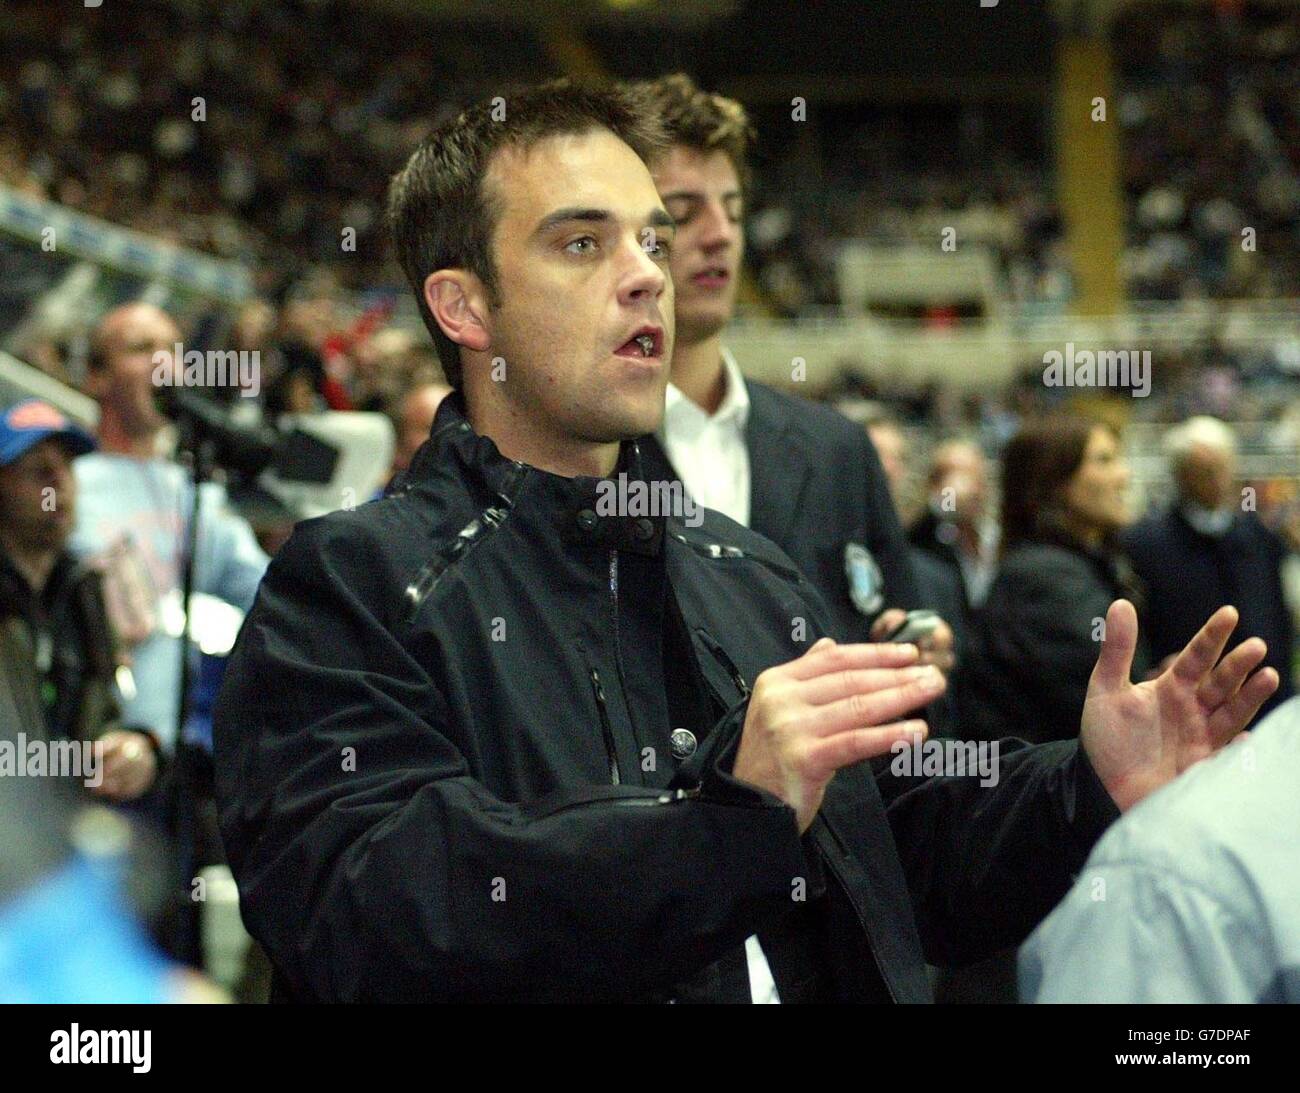 La star pop Robbie Williams si è divertita con i suoi amici durante la partita di Sky One che si sta disputando al St James Park di Newcastle United. Foto Stock